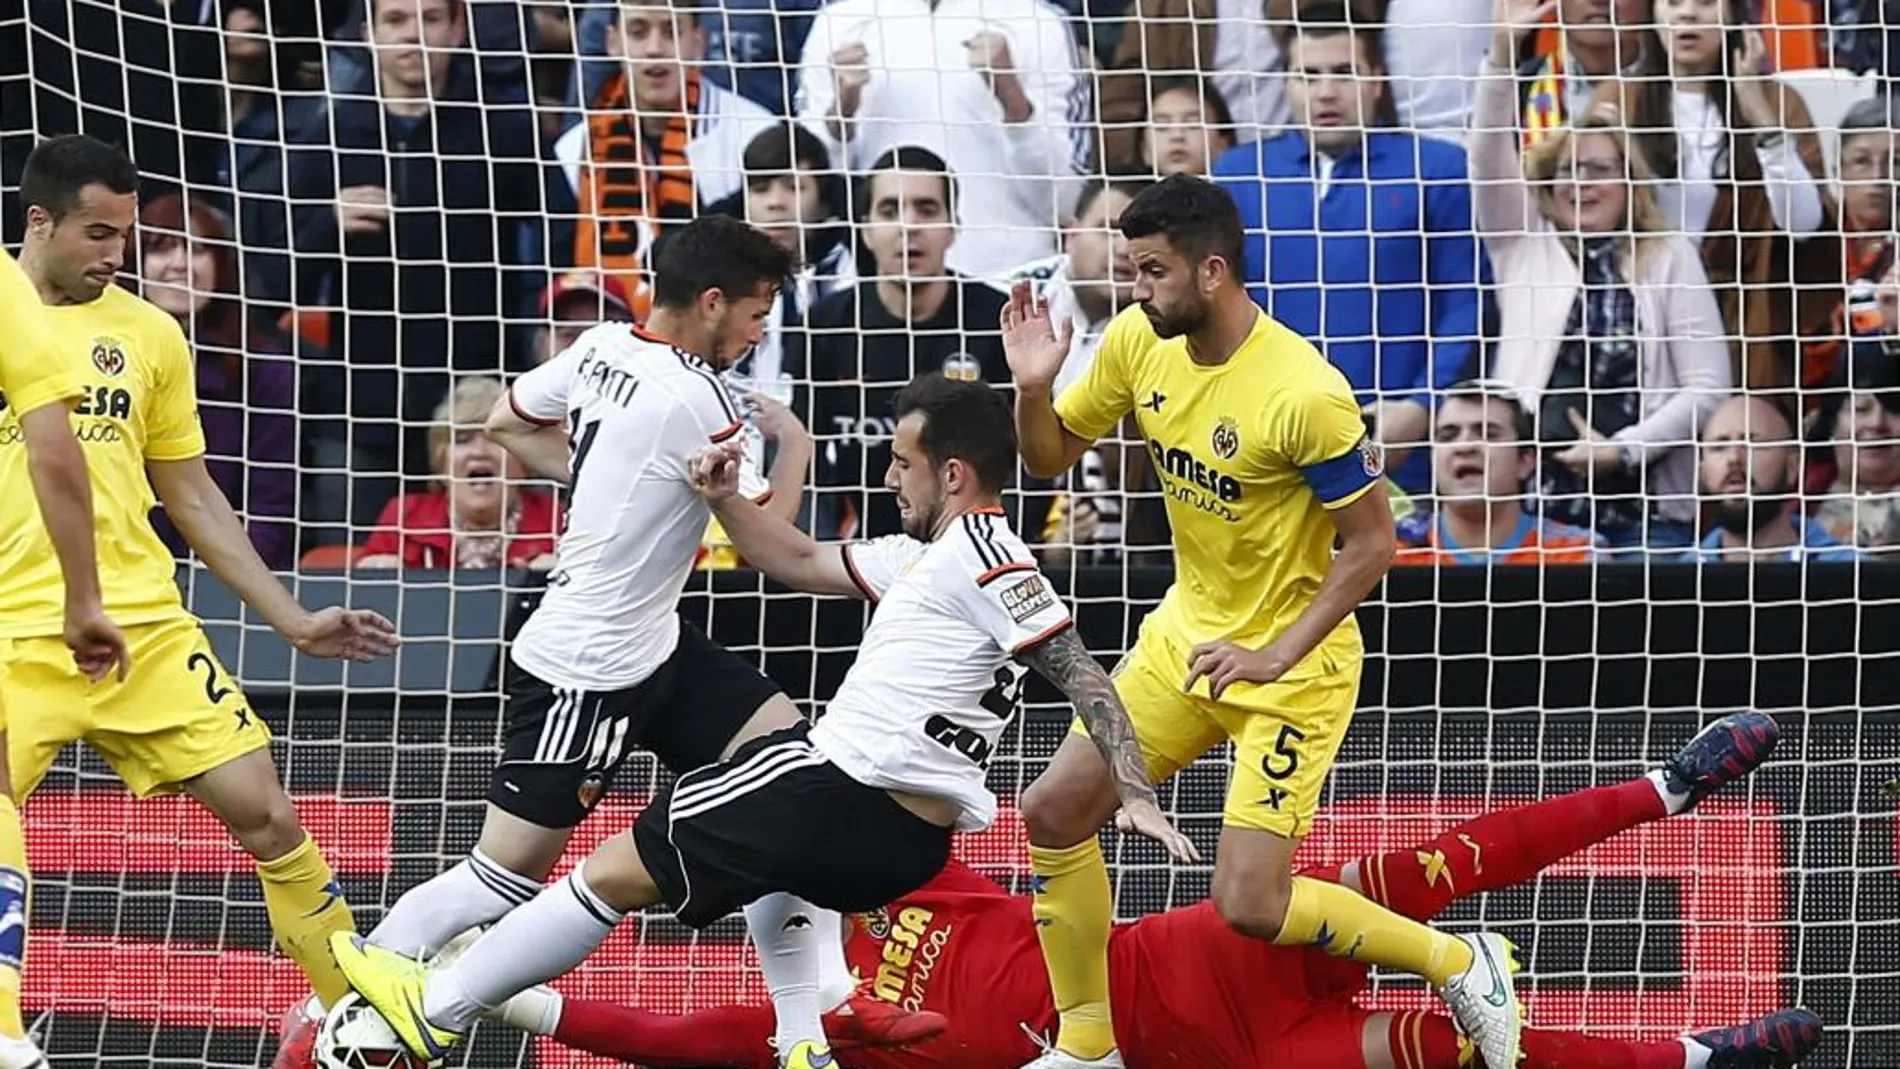 El delantero del Valencia Paco Alcácer (2d) intenta superar al portero del Villarreal Sergio Asenjo